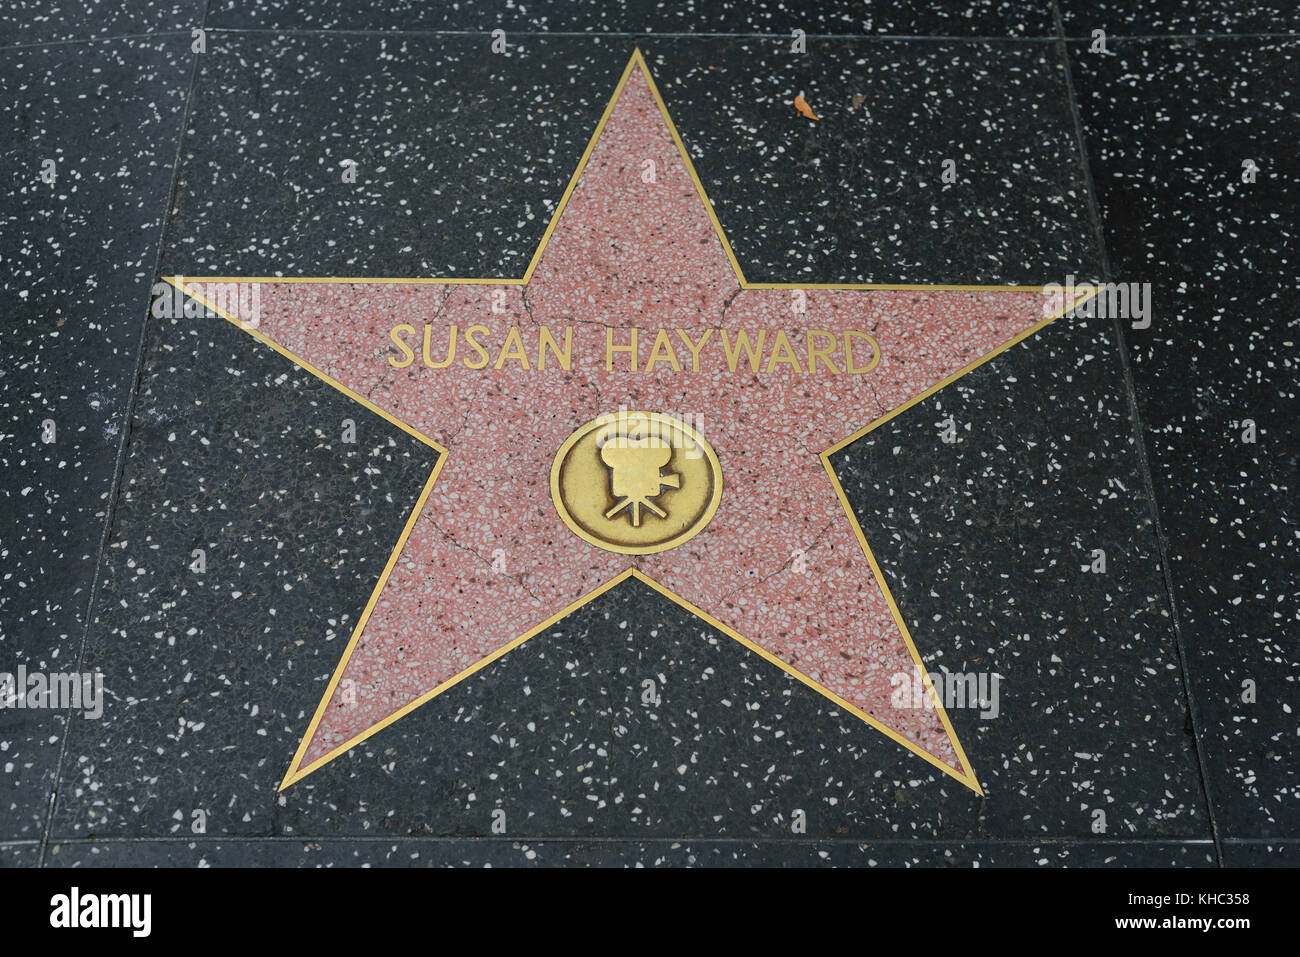 HOLLYWOOD, CA - 06 DÉCEMBRE : la star Susan Hayward sur le Hollywood Walk of Fame à Hollywood, Californie, le 6 décembre 2016. Banque D'Images